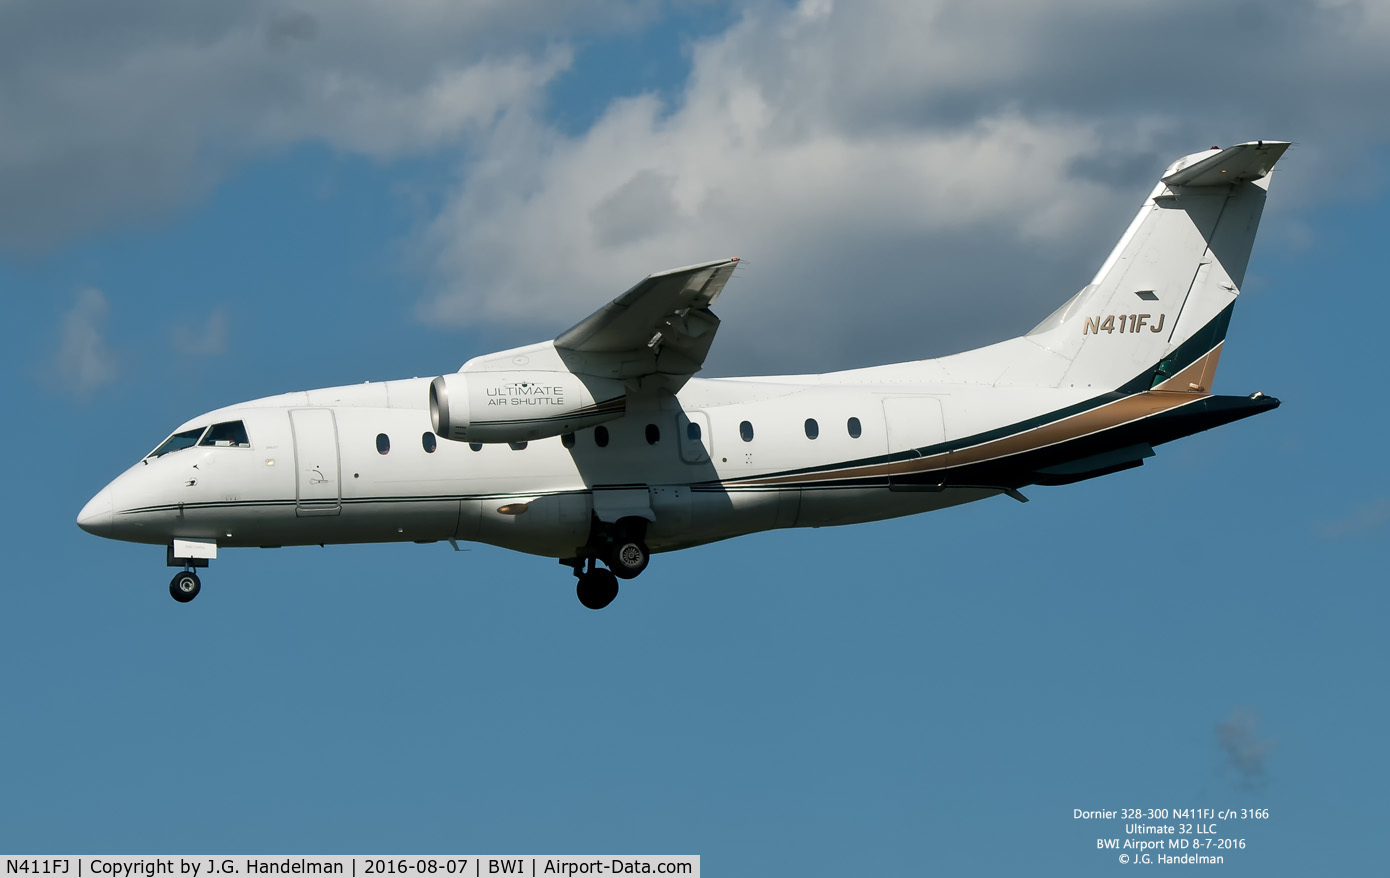 N411FJ, 2000 Fairchild Dornier 328-300 328JET C/N 3166, On final to 33L.